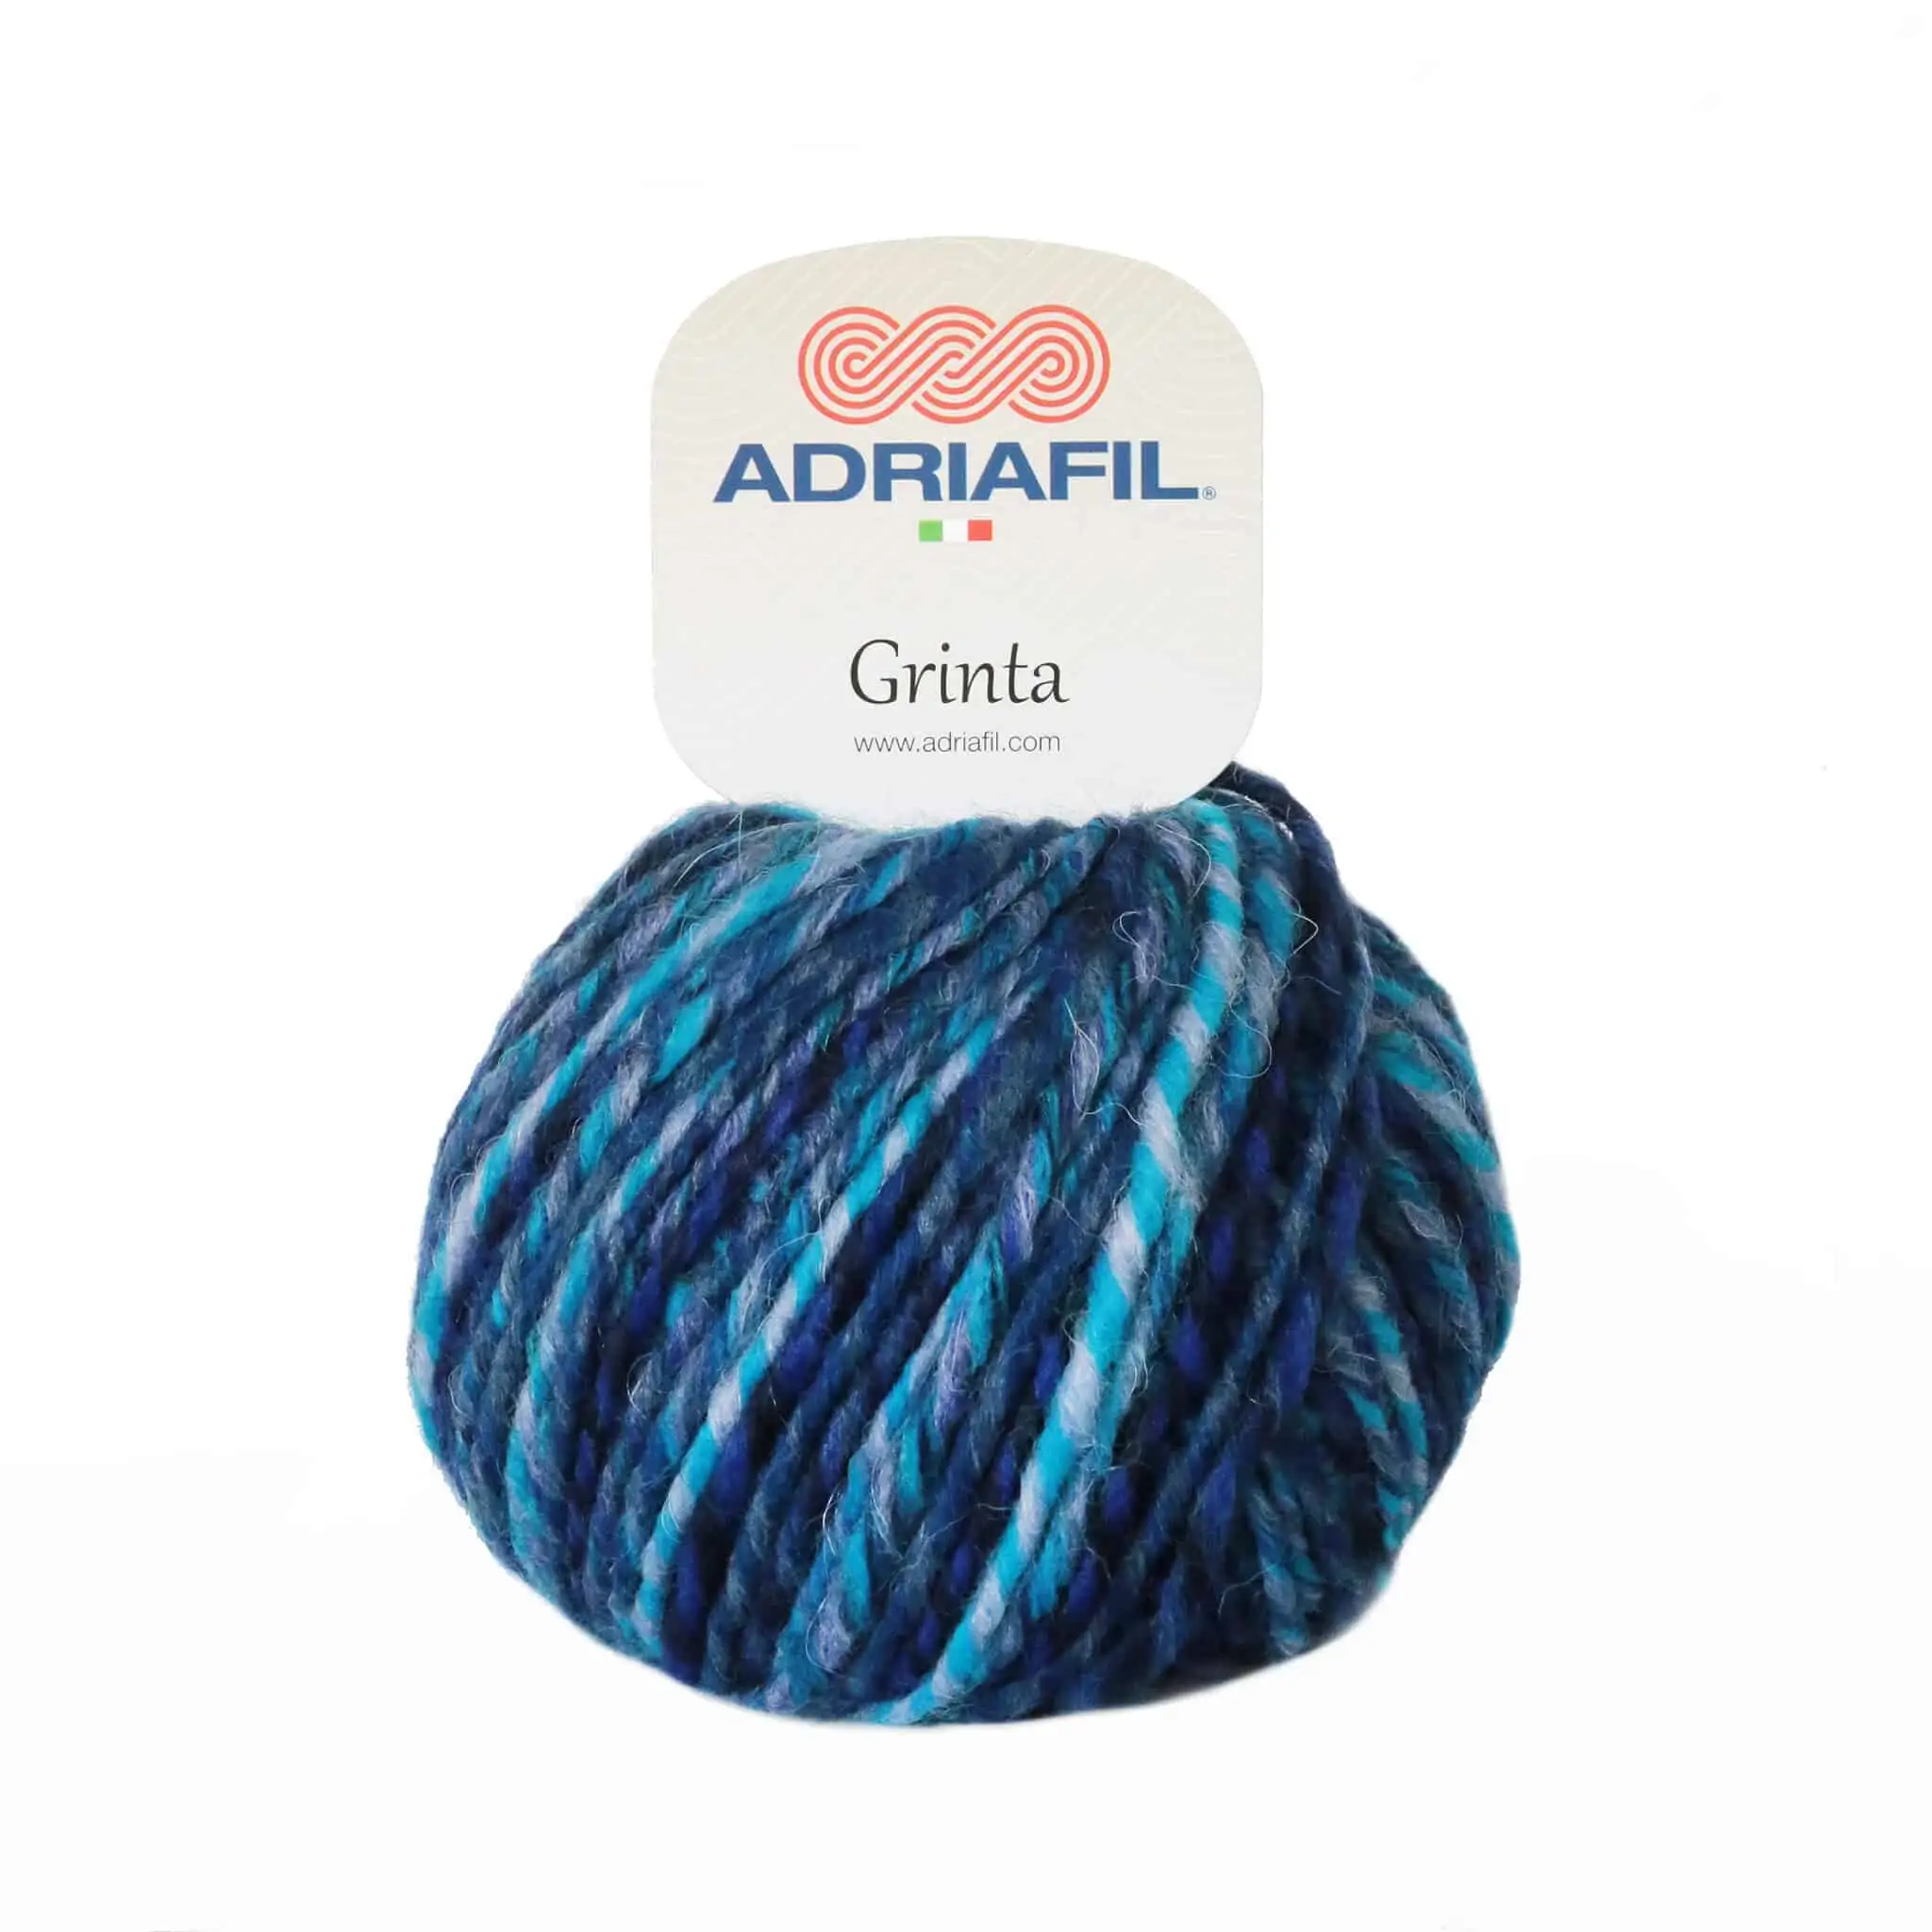 Yarn - Adriafil Grinta Aran / Chunky in Blue 43